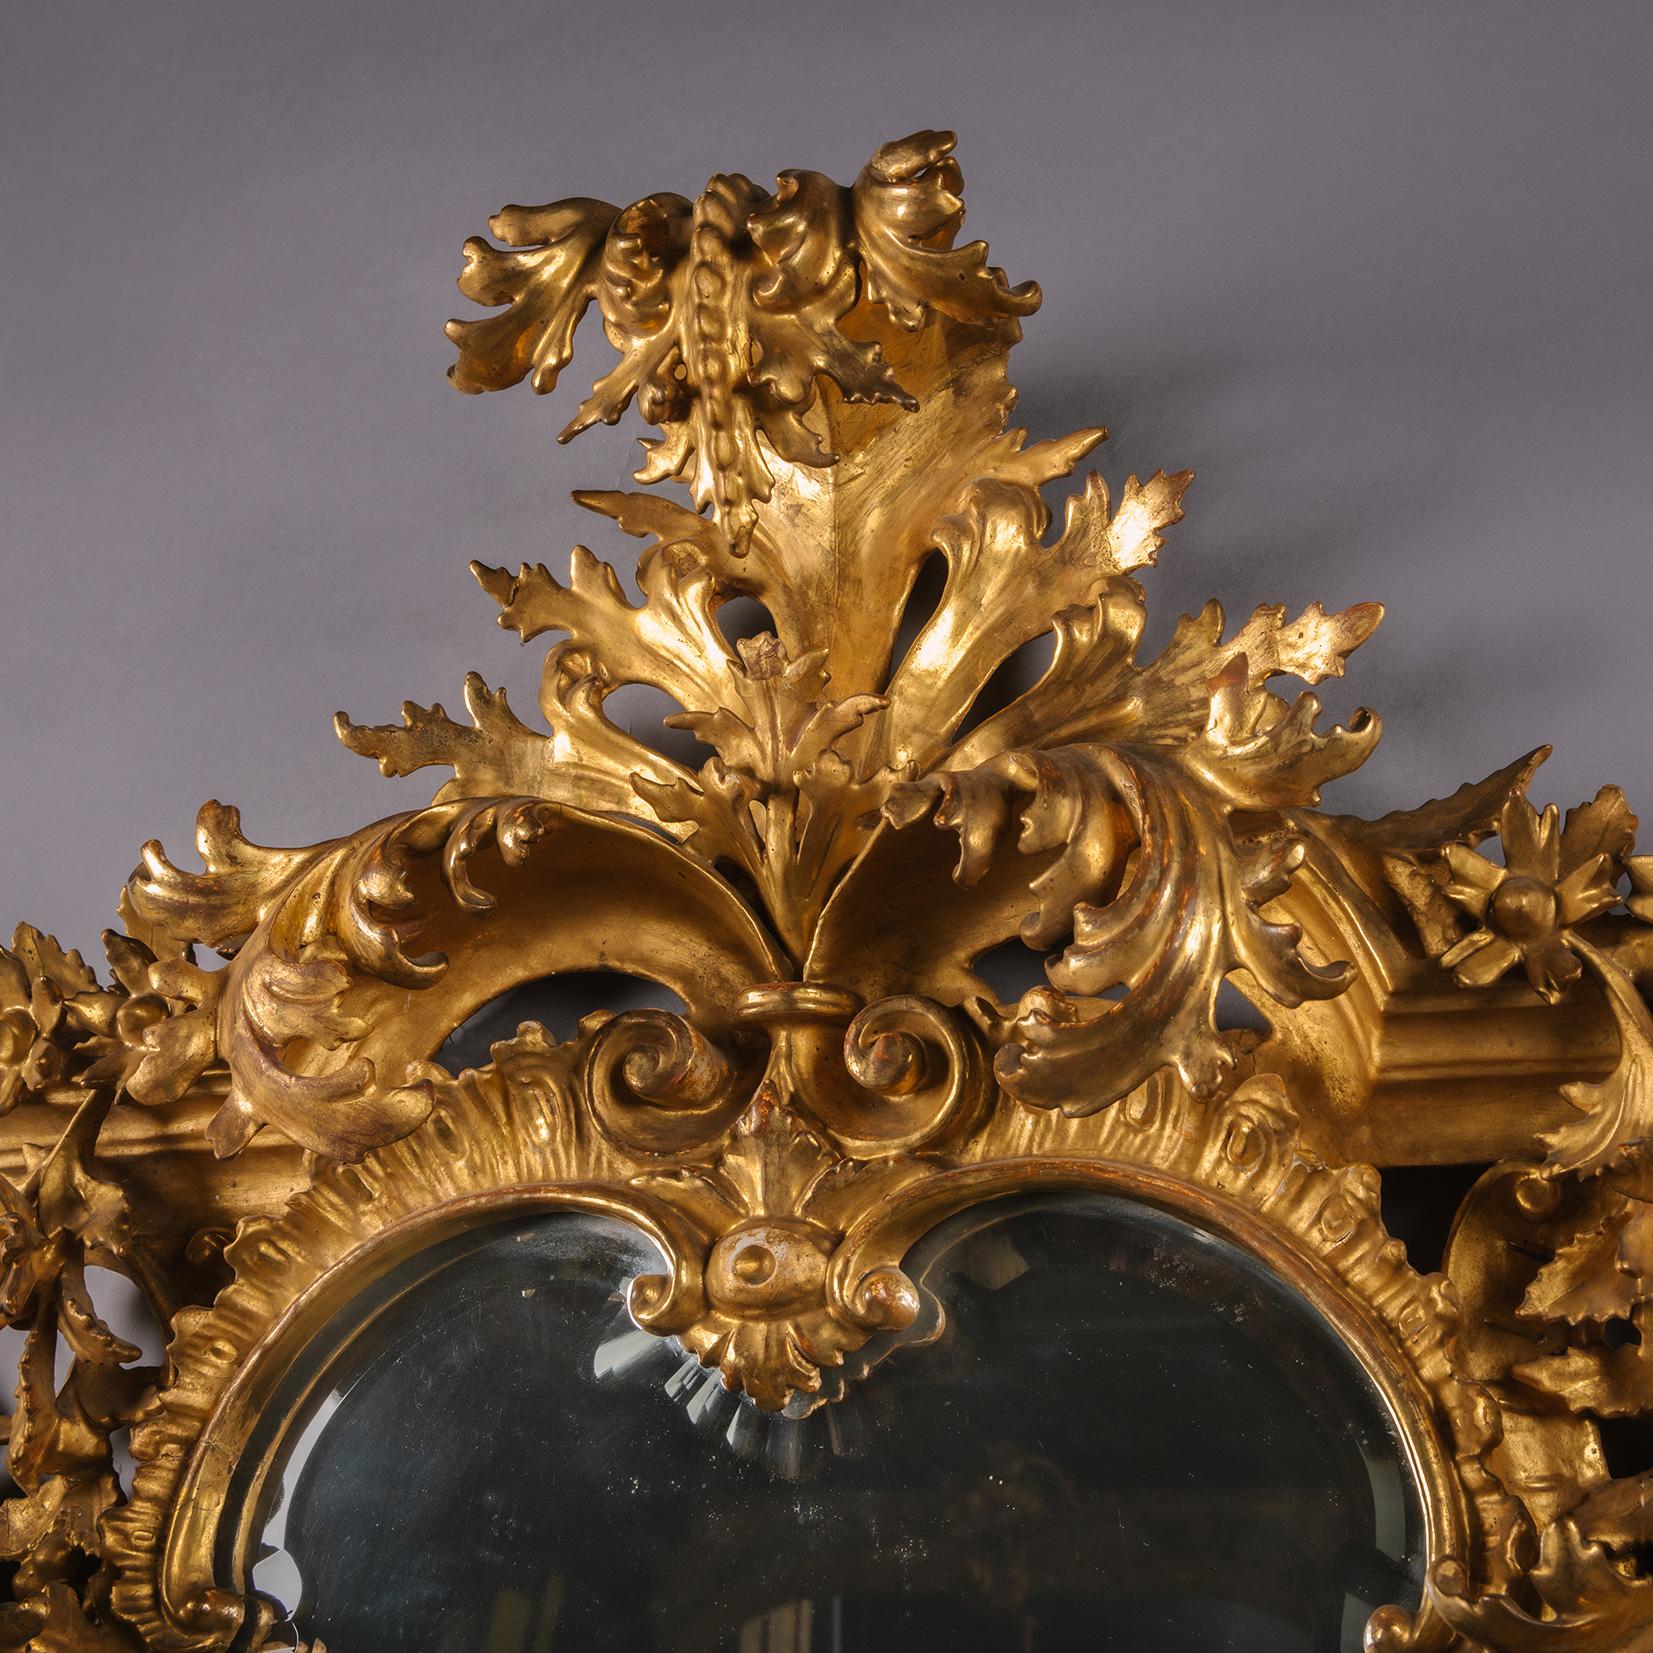 Miroir en bois doré sculpté de Florentine. 

Cet impressionnant miroir en bois doré sculpté présente une plaque biseautée en forme de cartouche, à l'intérieur d'un cadre à acanthes sculptées en rocaille et percées, avec des roses de rocaille, des